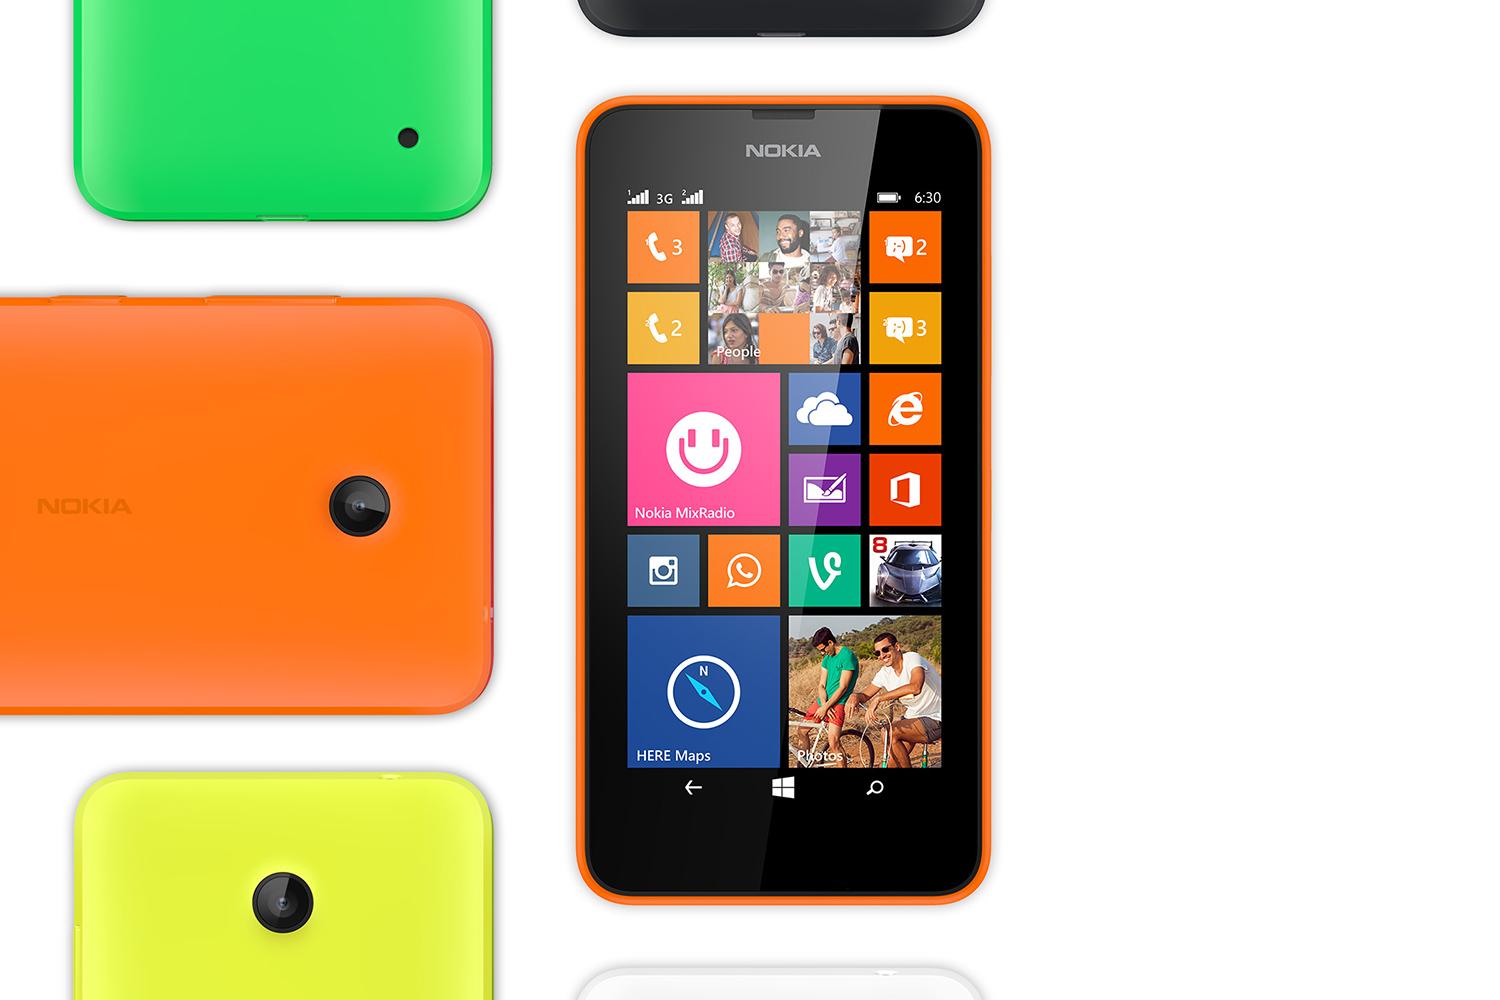 Nokia Lumia 630 Dual Sim colors